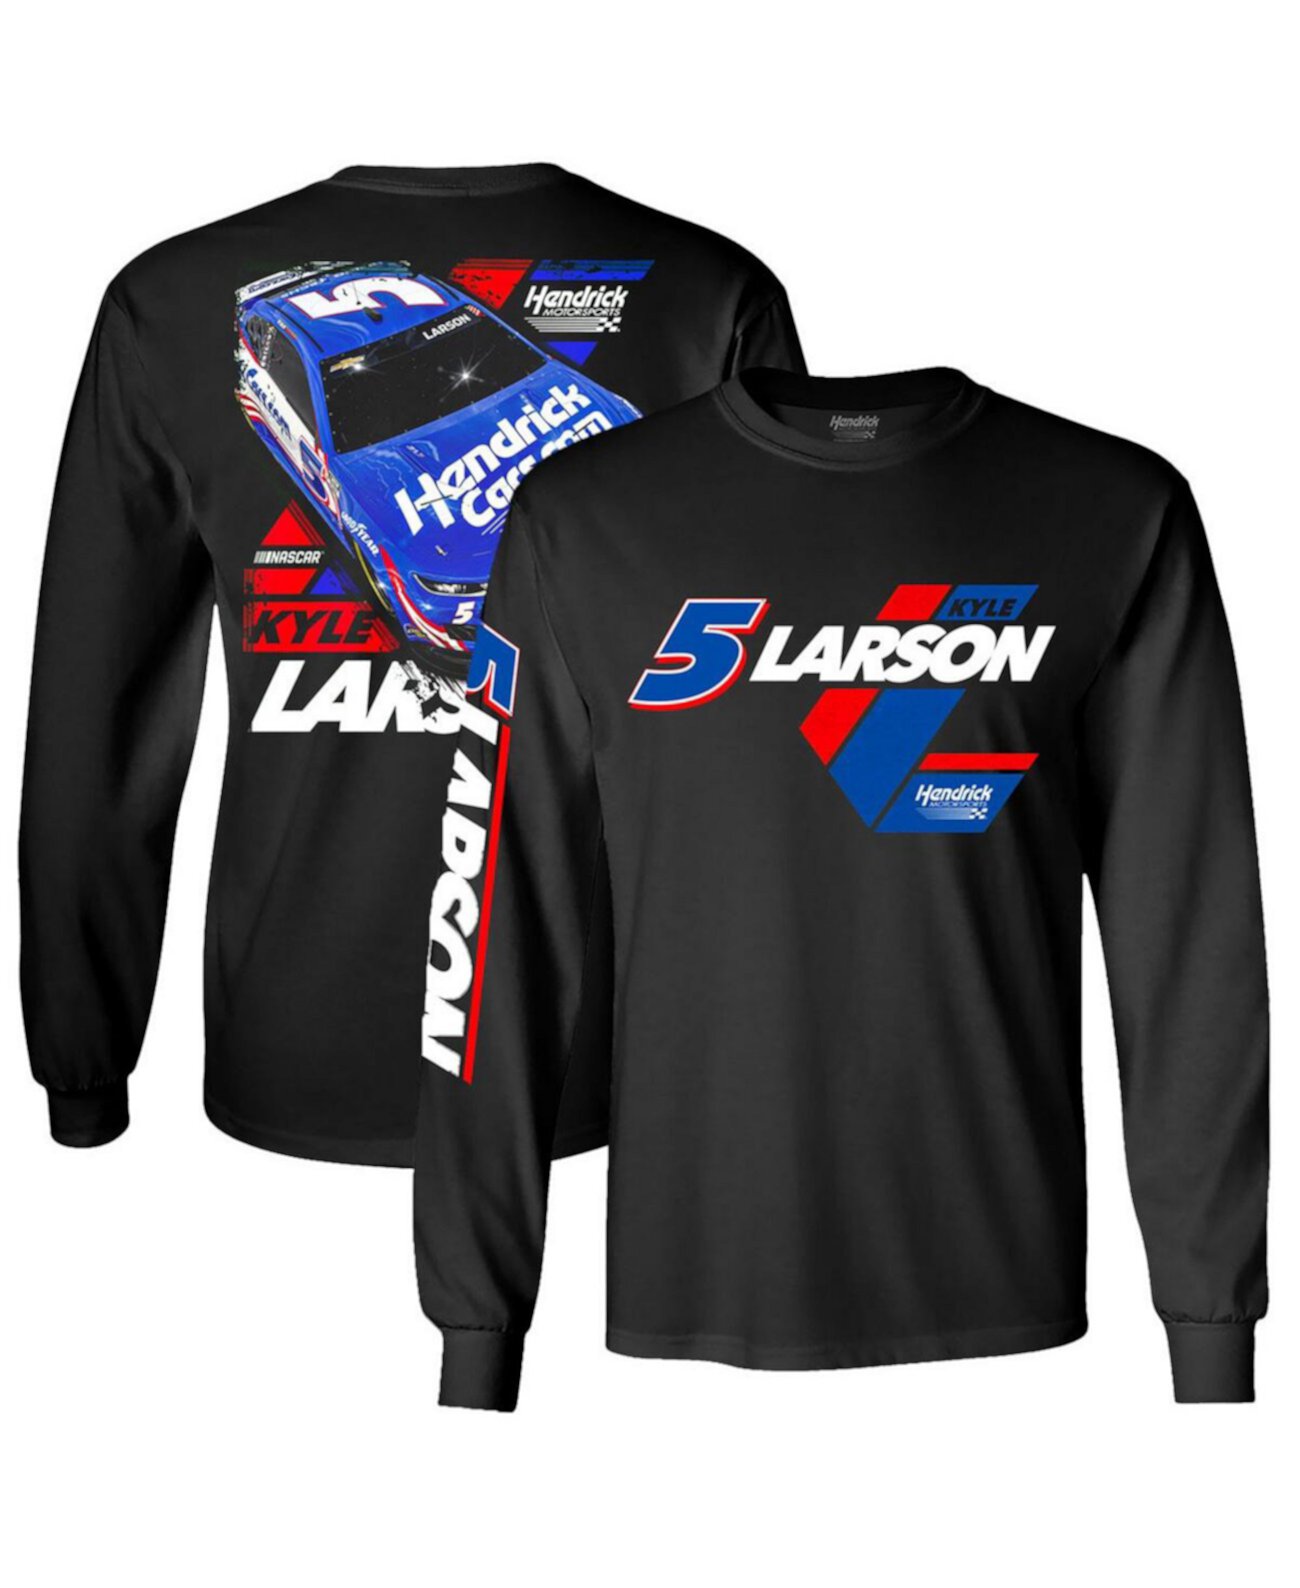 Мужская черная футболка с длинным рукавом Kyle Larson Car Hendrick Motorsports Team Collection